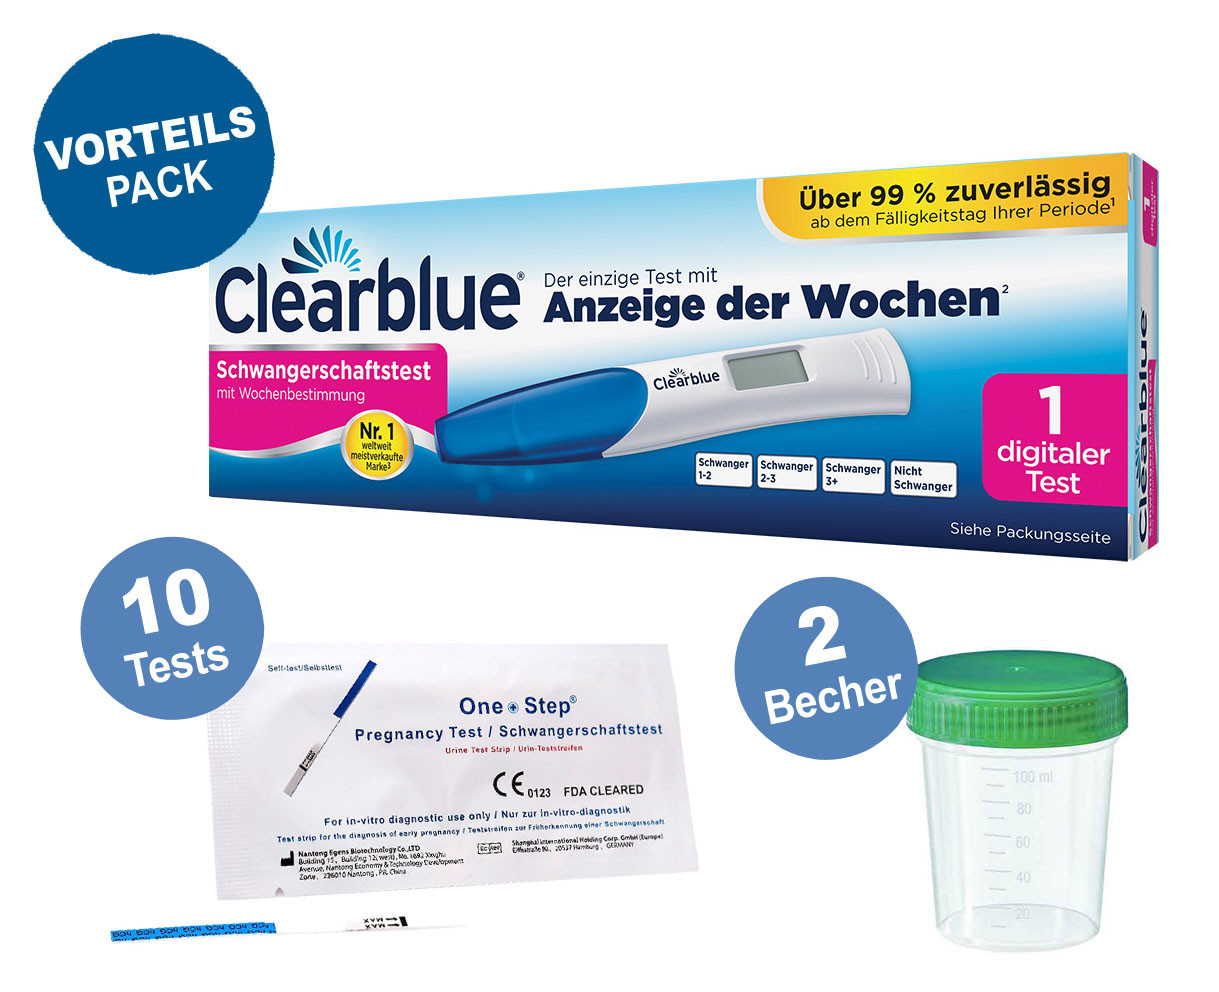 Clearblue digitaler Schwangerschaftstest mit Wochenbestimmung mit Anzeige der Wochen